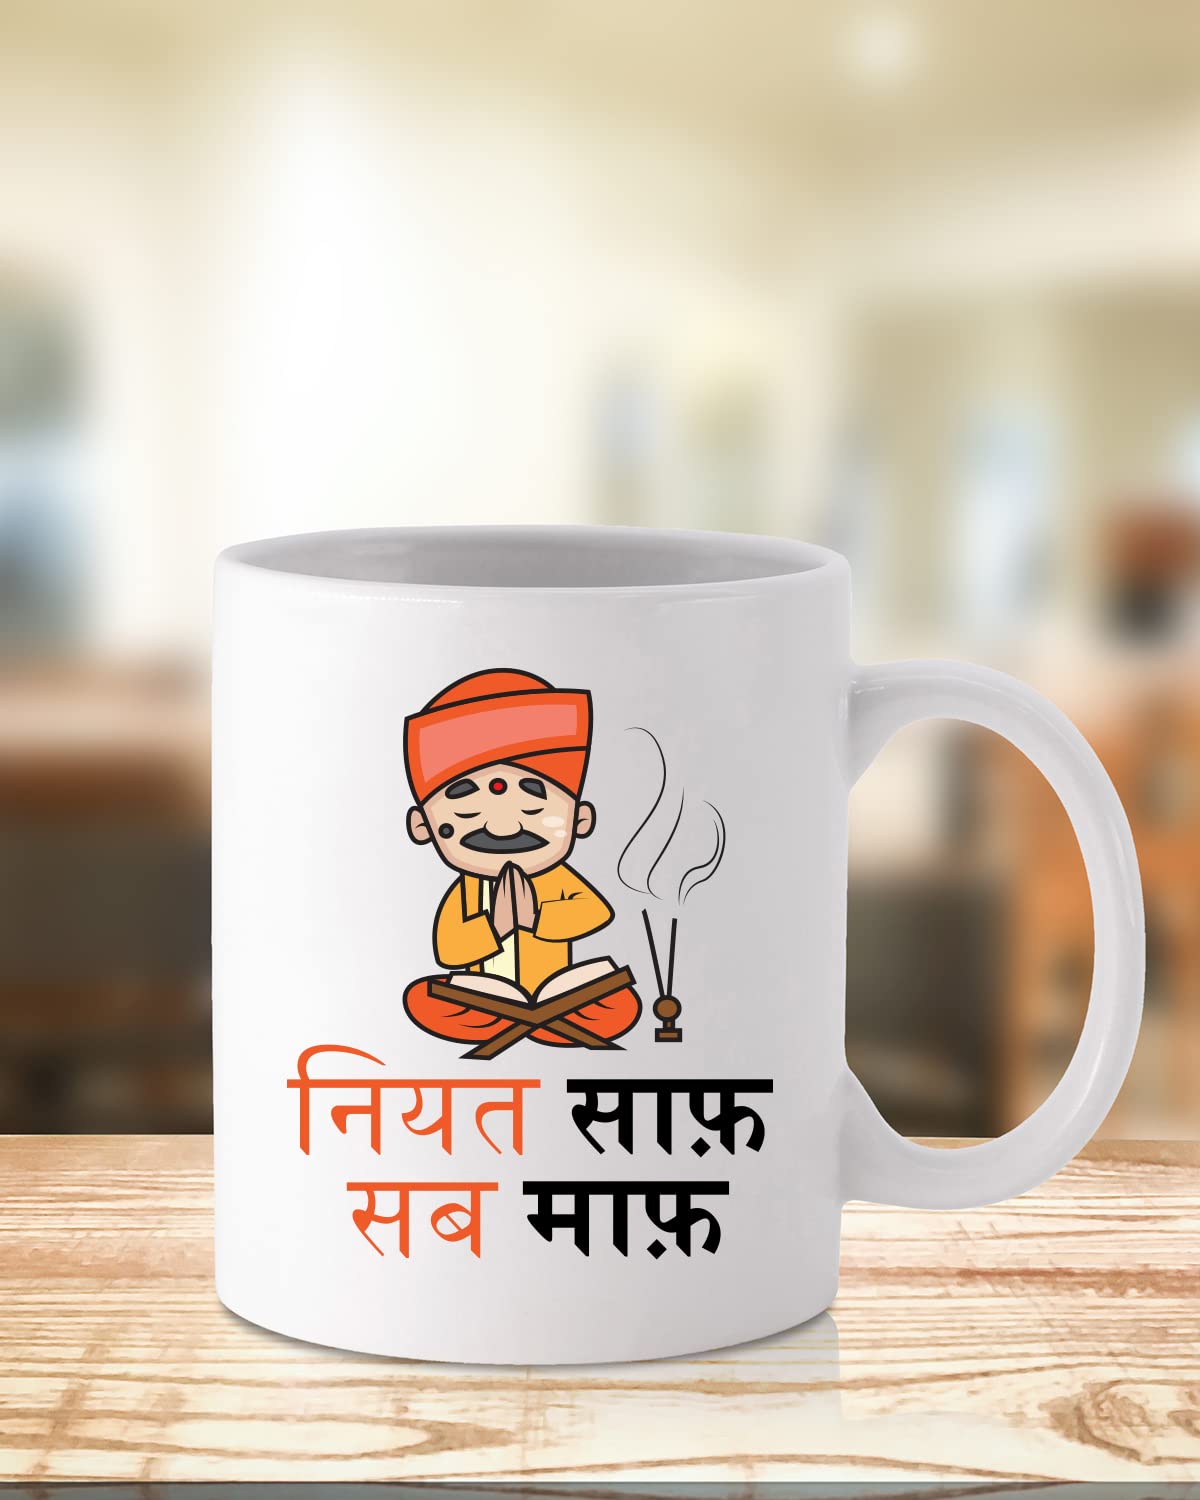 NIYAT SAAF Coffee Mug - Gift for Friend, Birthday Gift, Birthday Mug, Motivational Quotes Mug, Mugs with Funny & Funky Dialogues, Bollywood Mugs, Funny Mugs for Him & Her